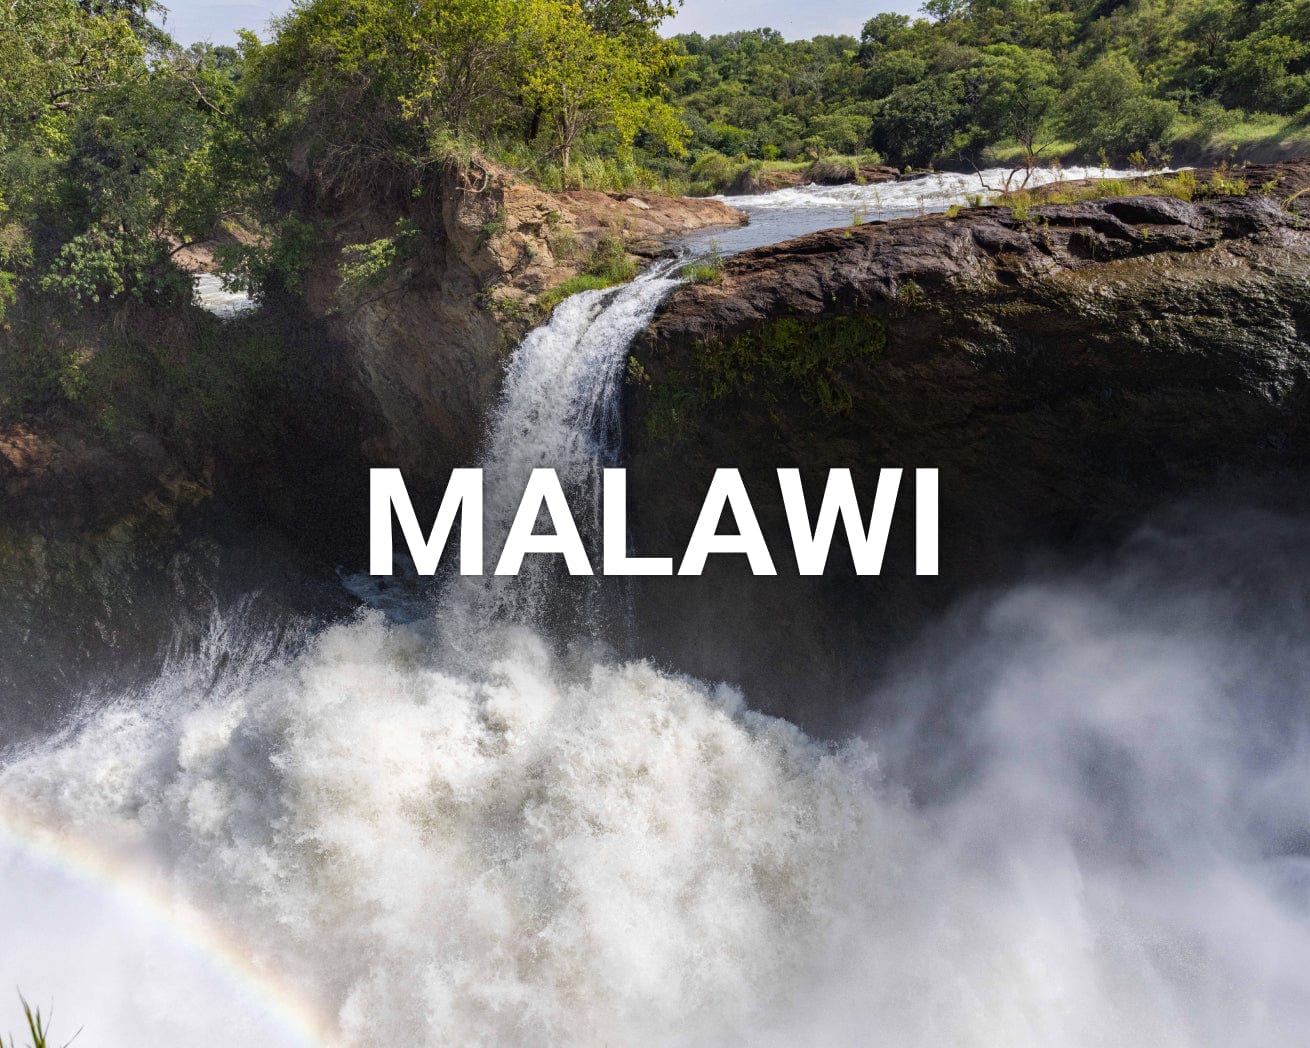 Malawi main image